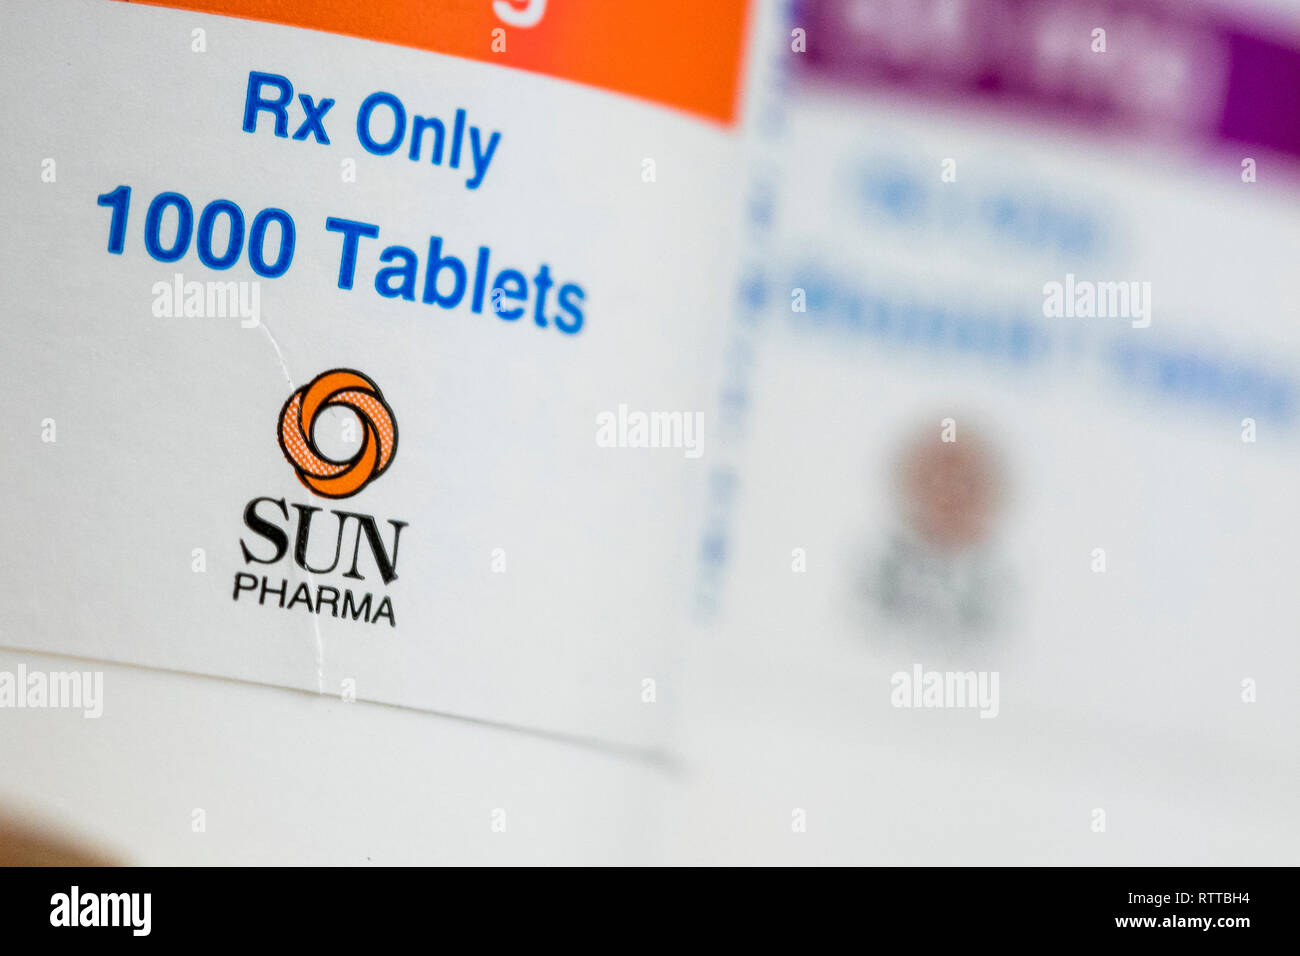 Sun Pharmaceutical Industries un logo est visible sur l'emballage de produits pharmaceutiques sur ordonnance photographié dans une pharmacie. Banque D'Images